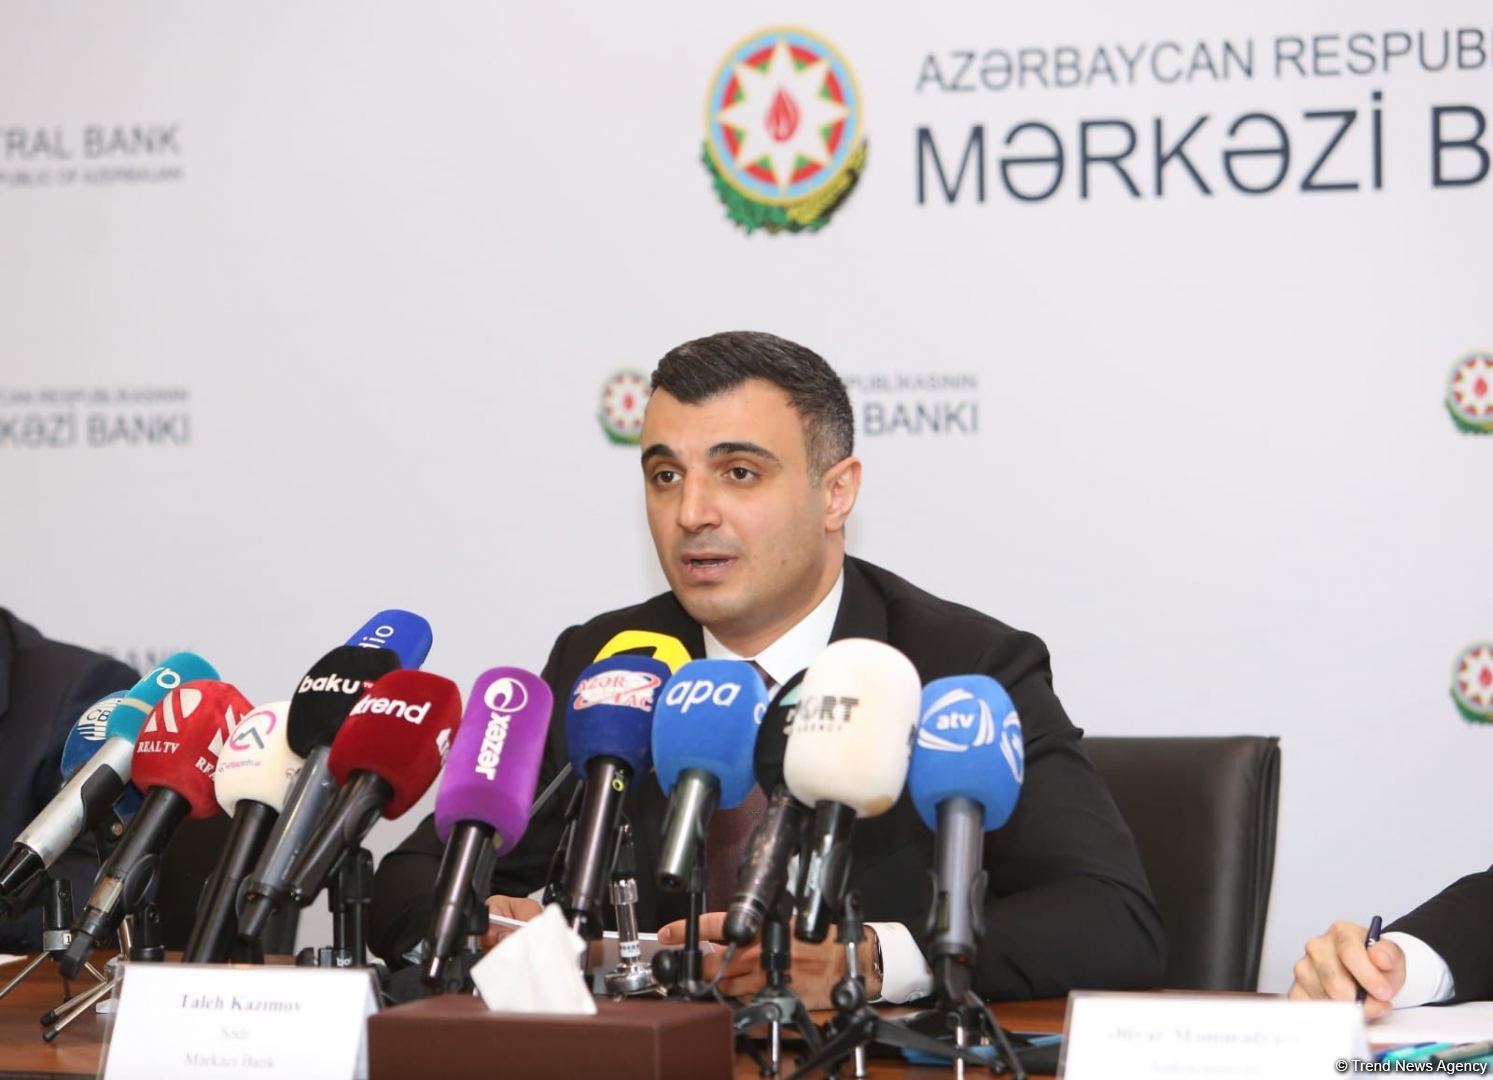 Стратегические валютные резервы Азербайджана выросли на 10 процентов - Талех Кязимов